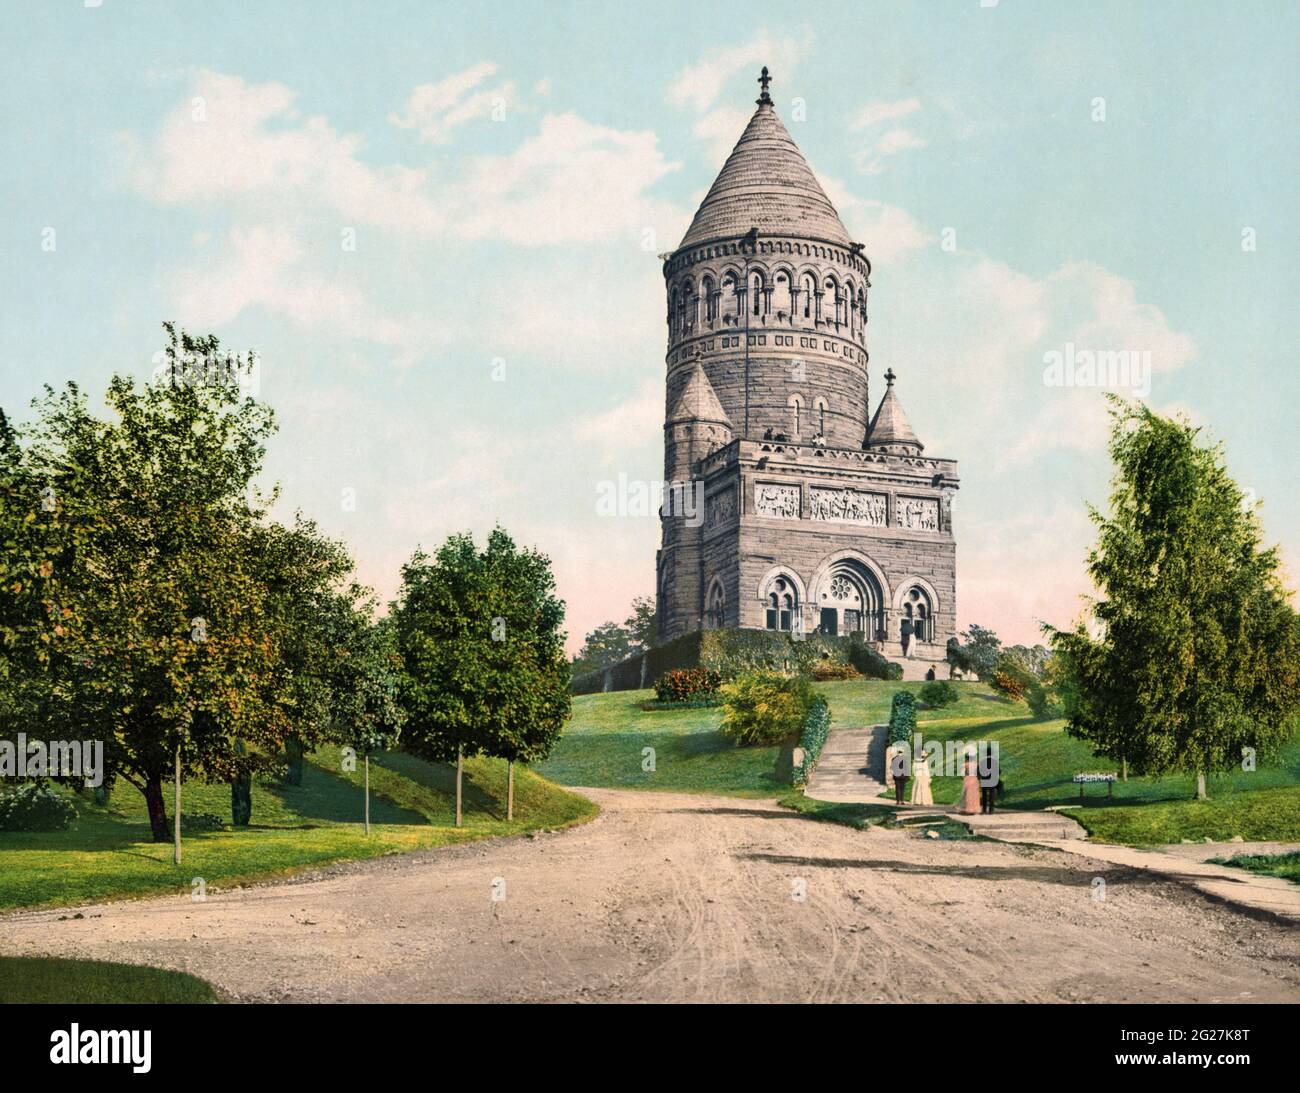 Fotodruck des Garfield Memorial in Cleveland, Ohio, um 1900. Stockfoto